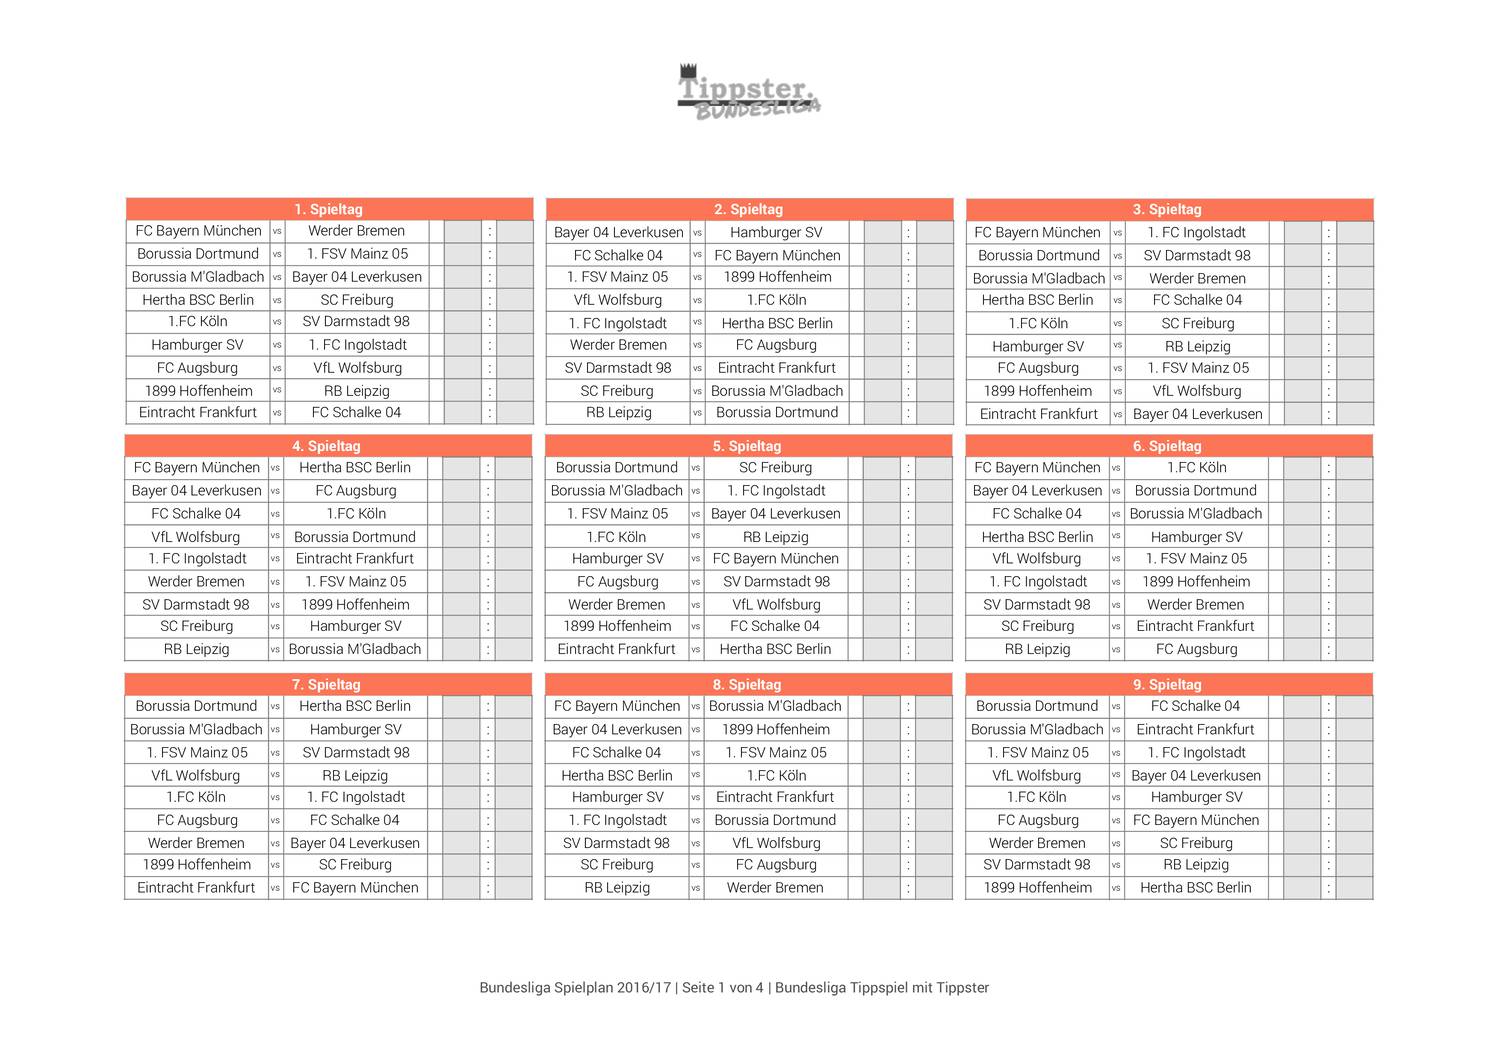 Bundesliga Spielplan 20/21 Pdf  3. Liga Karte 20/21  Bundesliga Match